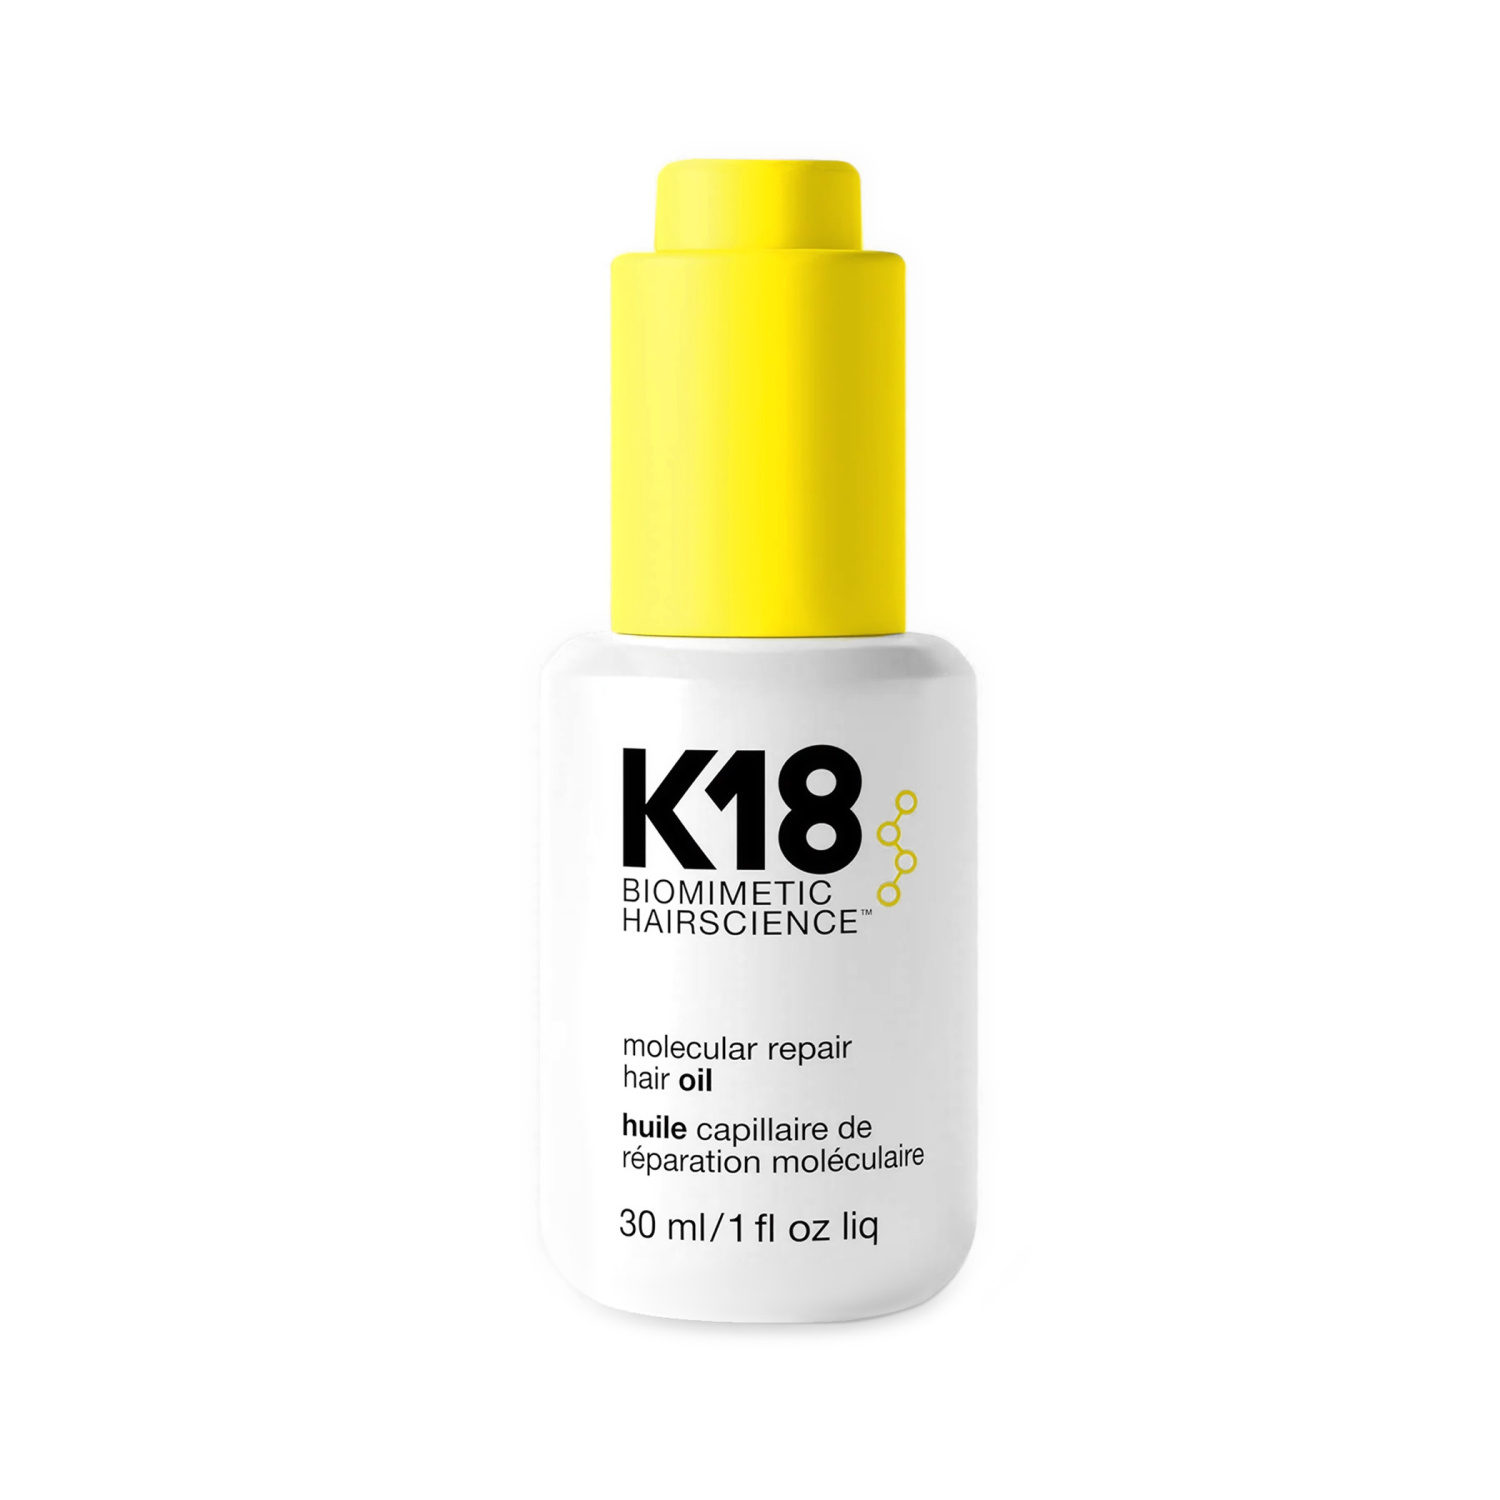 K18 Molecular Repair Hair Oil 30ml - интернет-магазин профессиональной косметики Spadream, изображение 48991